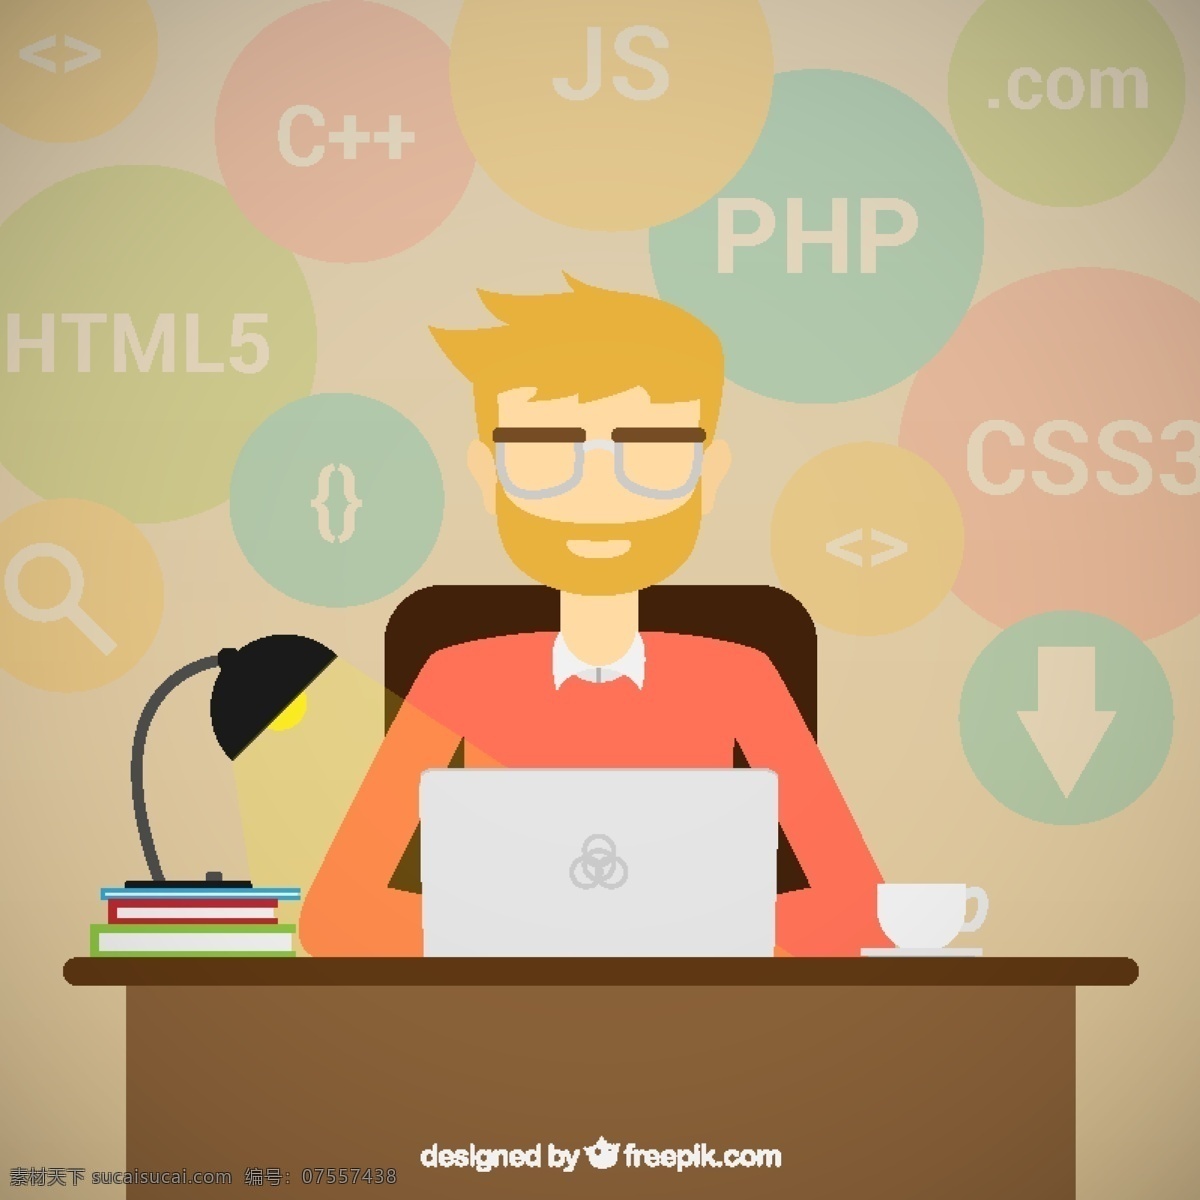 程序员背景 商务 计算机 技术 工人 工艺 代码 编程 企业家 开发者 程序员 html 编码 java中 算法